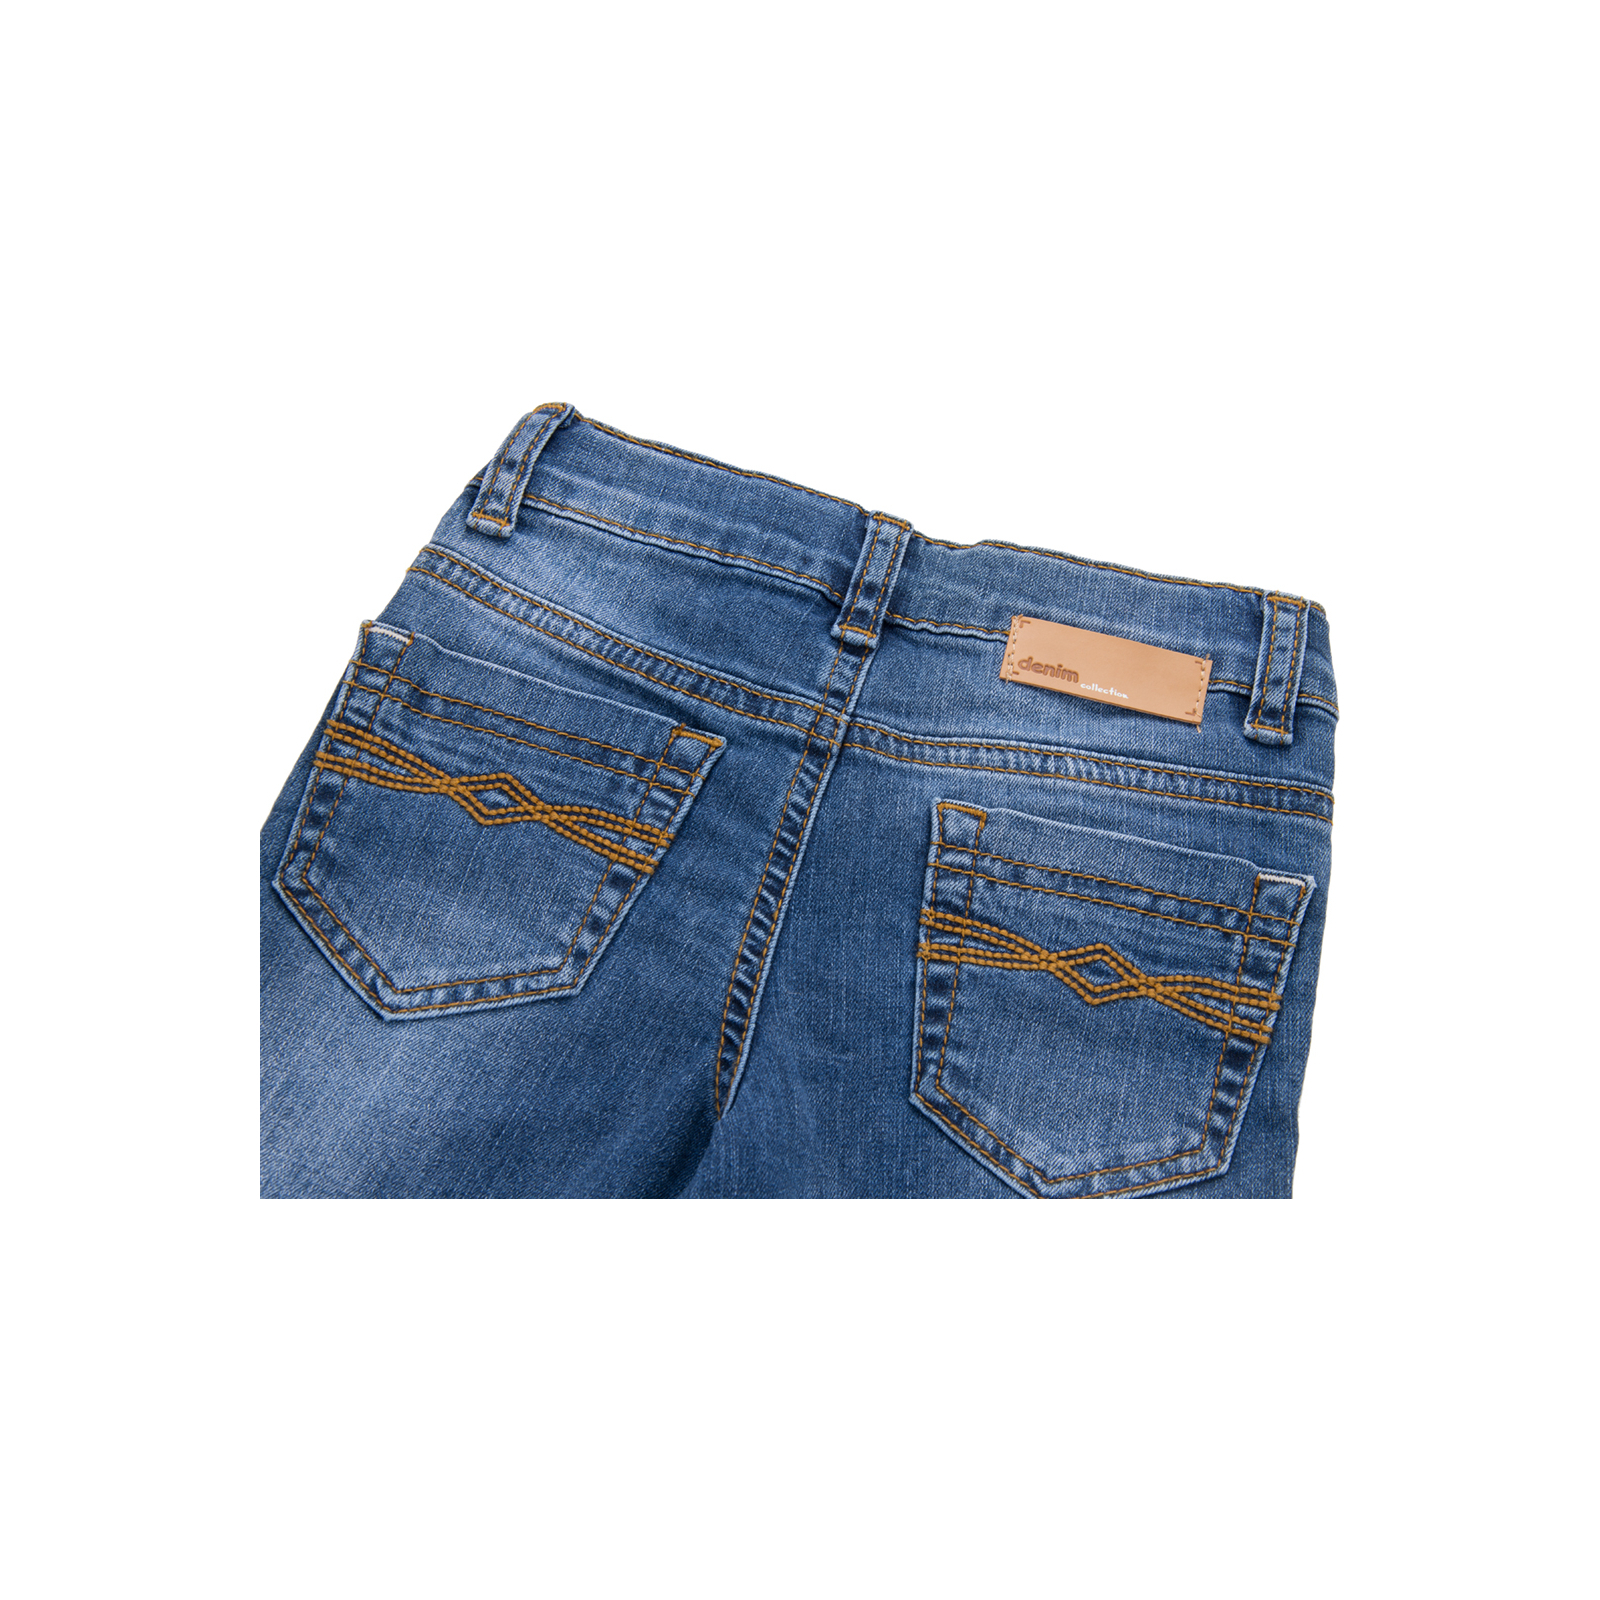 Джинсы Breeze синие (15YECPAN371-92B-jeans) изображение 4